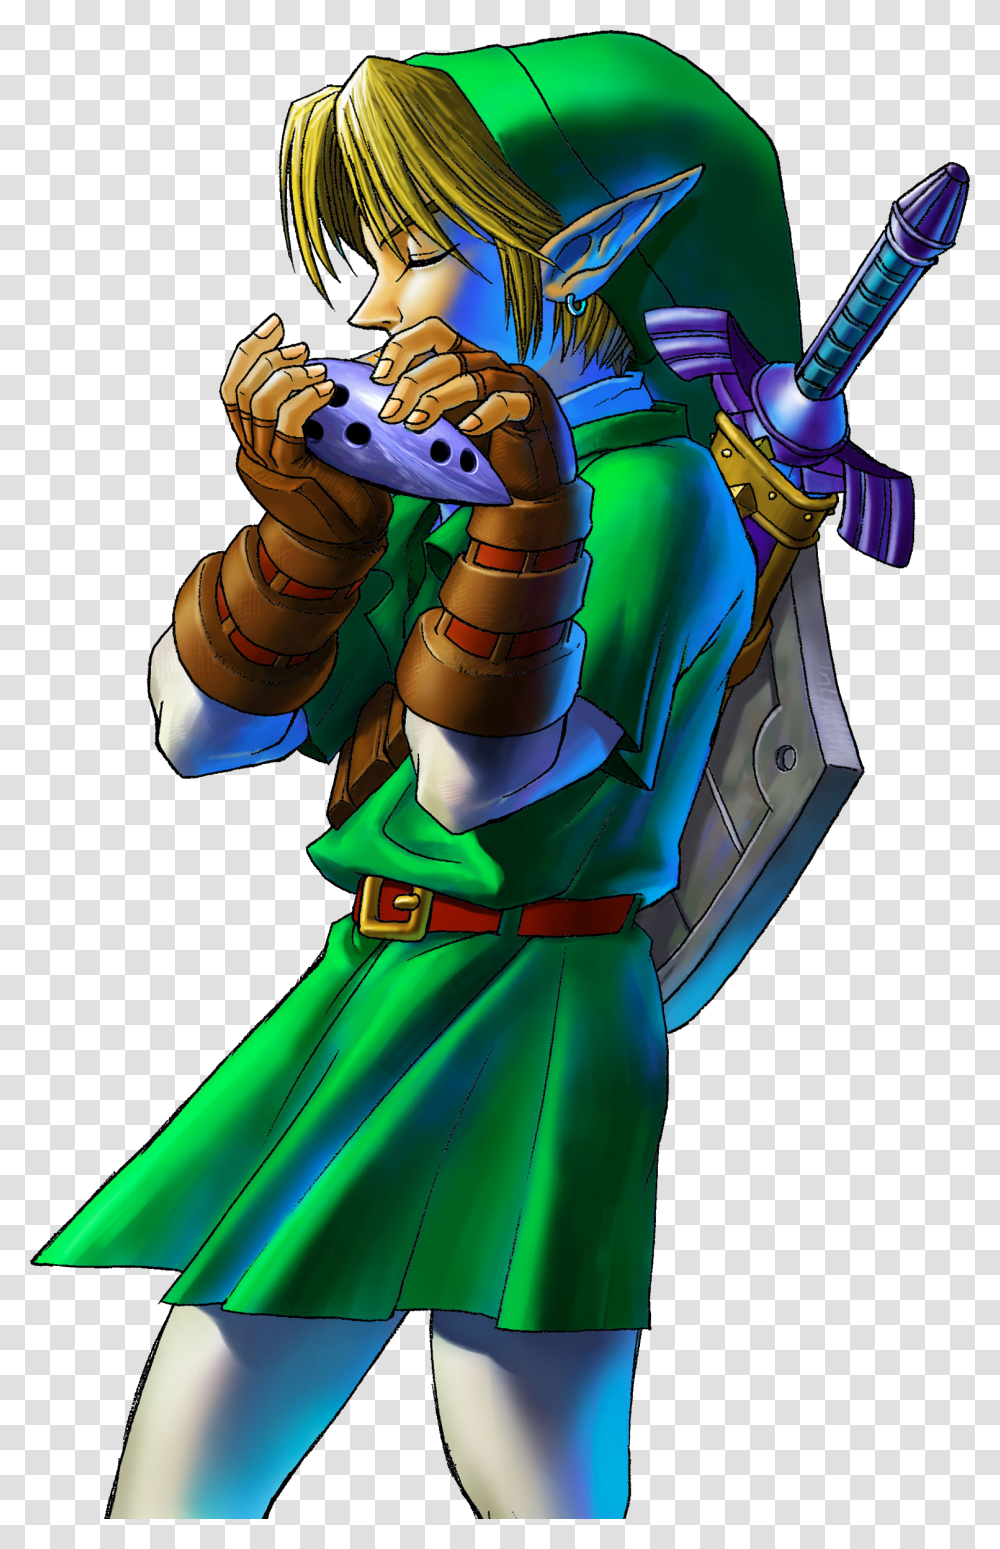 Official Legend Of Zelda Link Artwork Nintendo, Toy, Costume, Elf Transparent Png